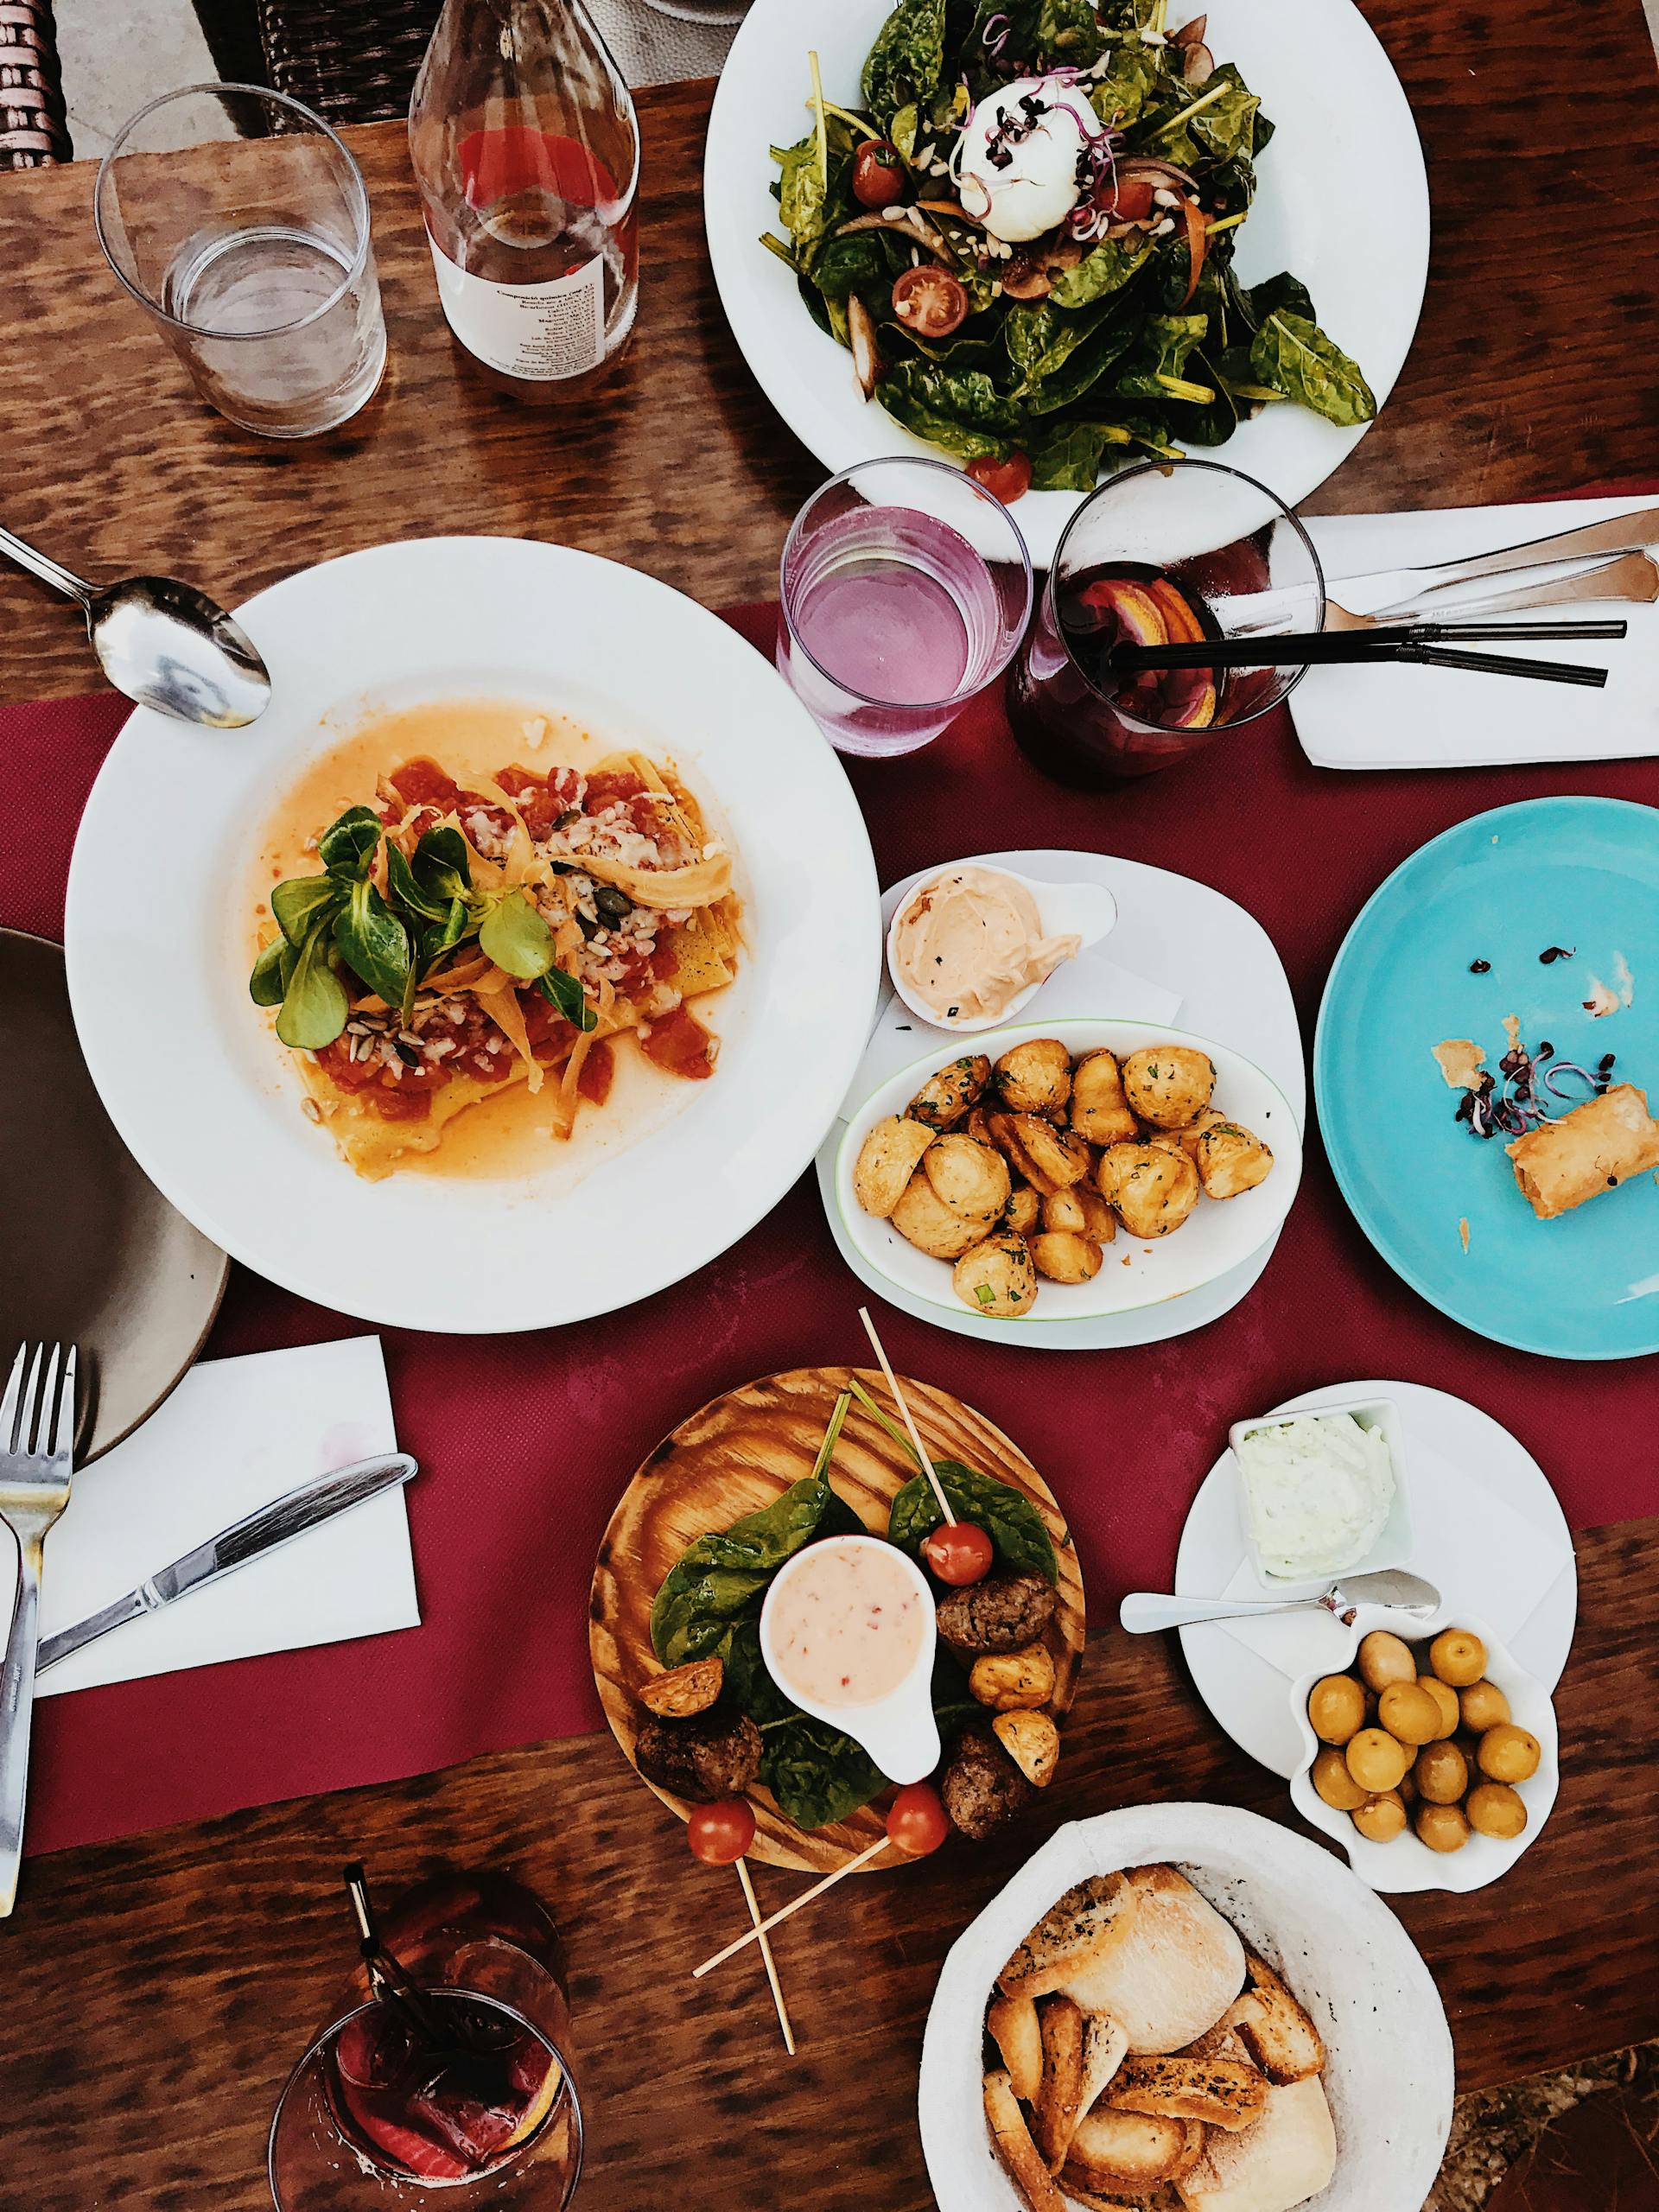 Une photo montrant un dîner servi sur une table | Source : Pexels